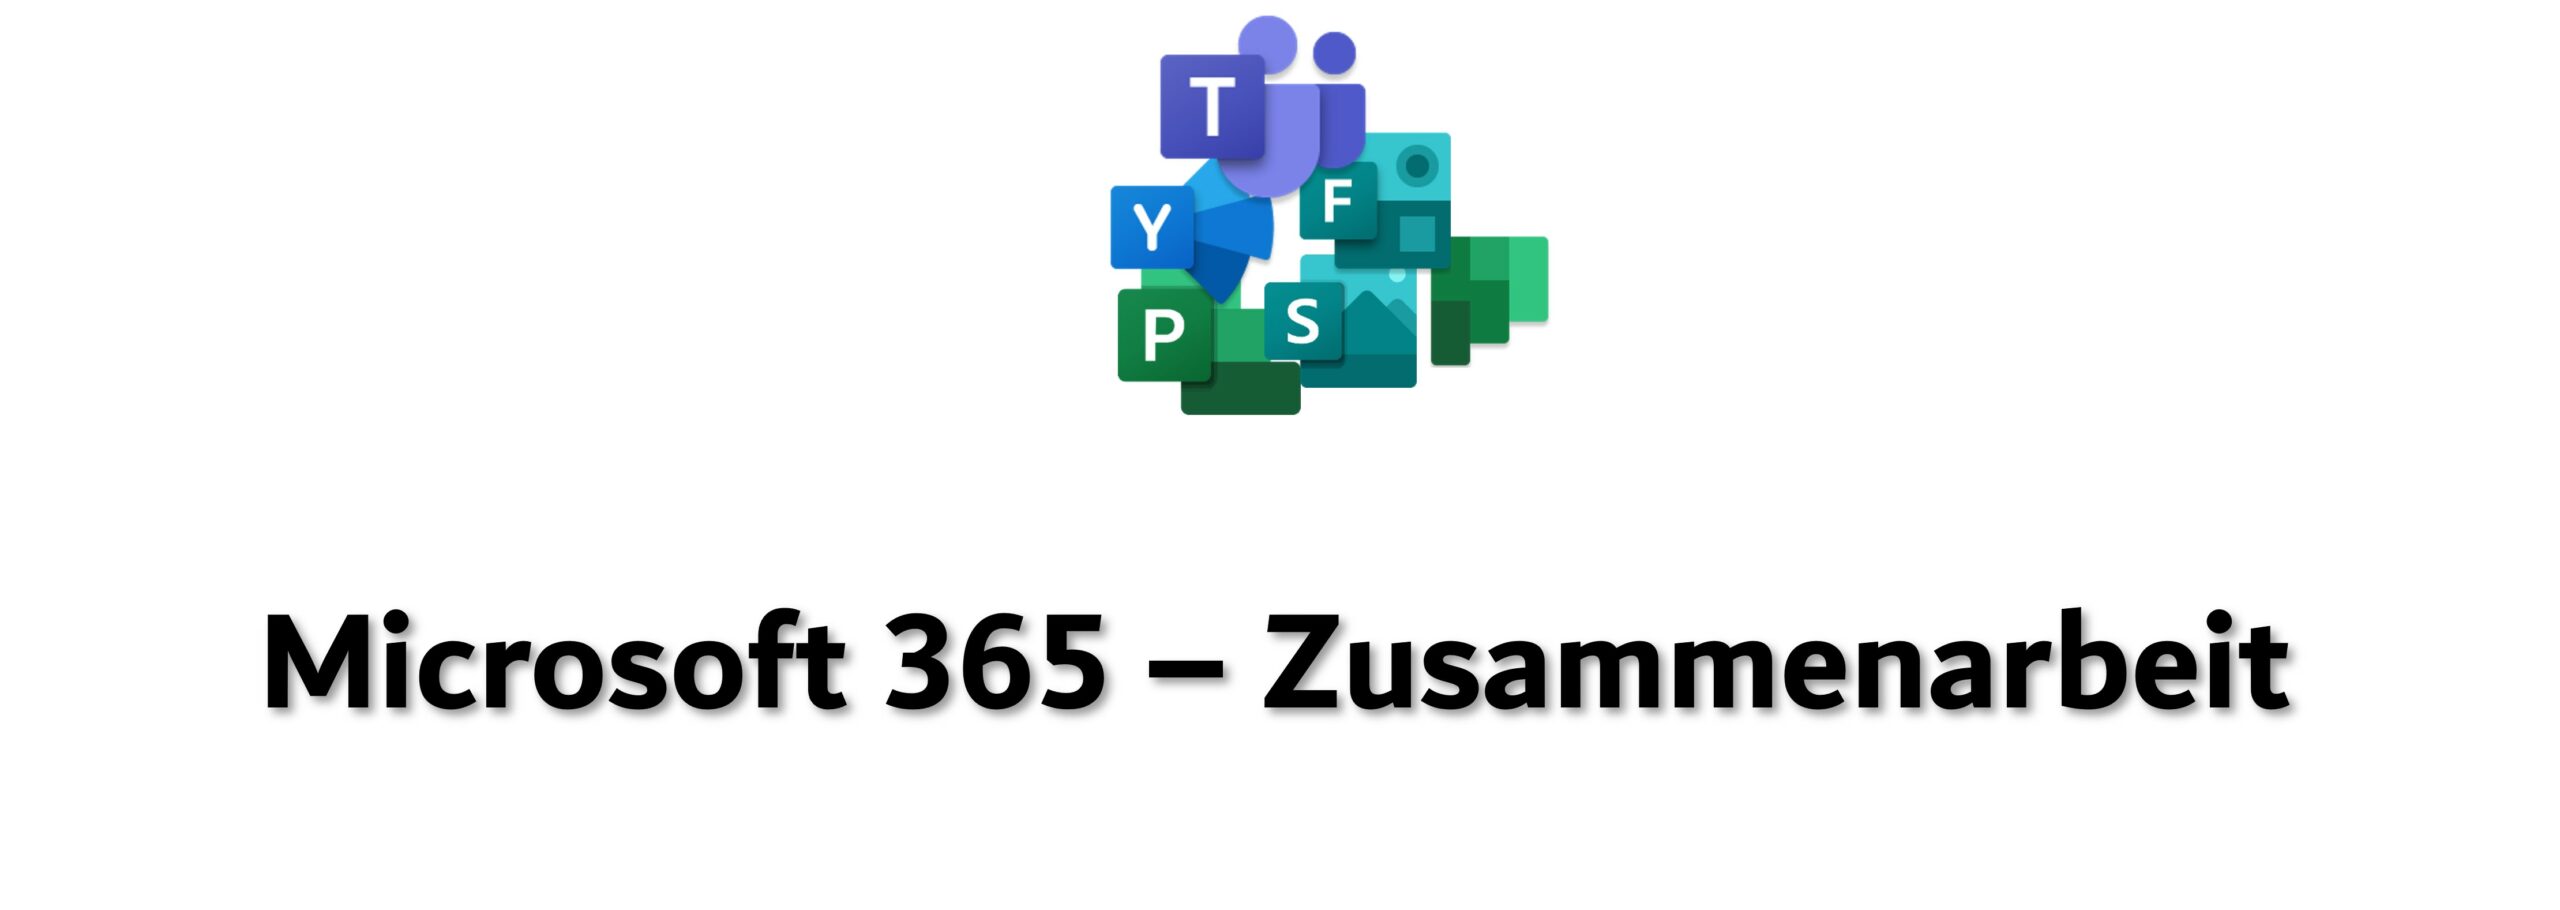 Microsoft 365 – Zusammenarbeit Logos, Teams, SharePoint, Yammer, Forms, Planner